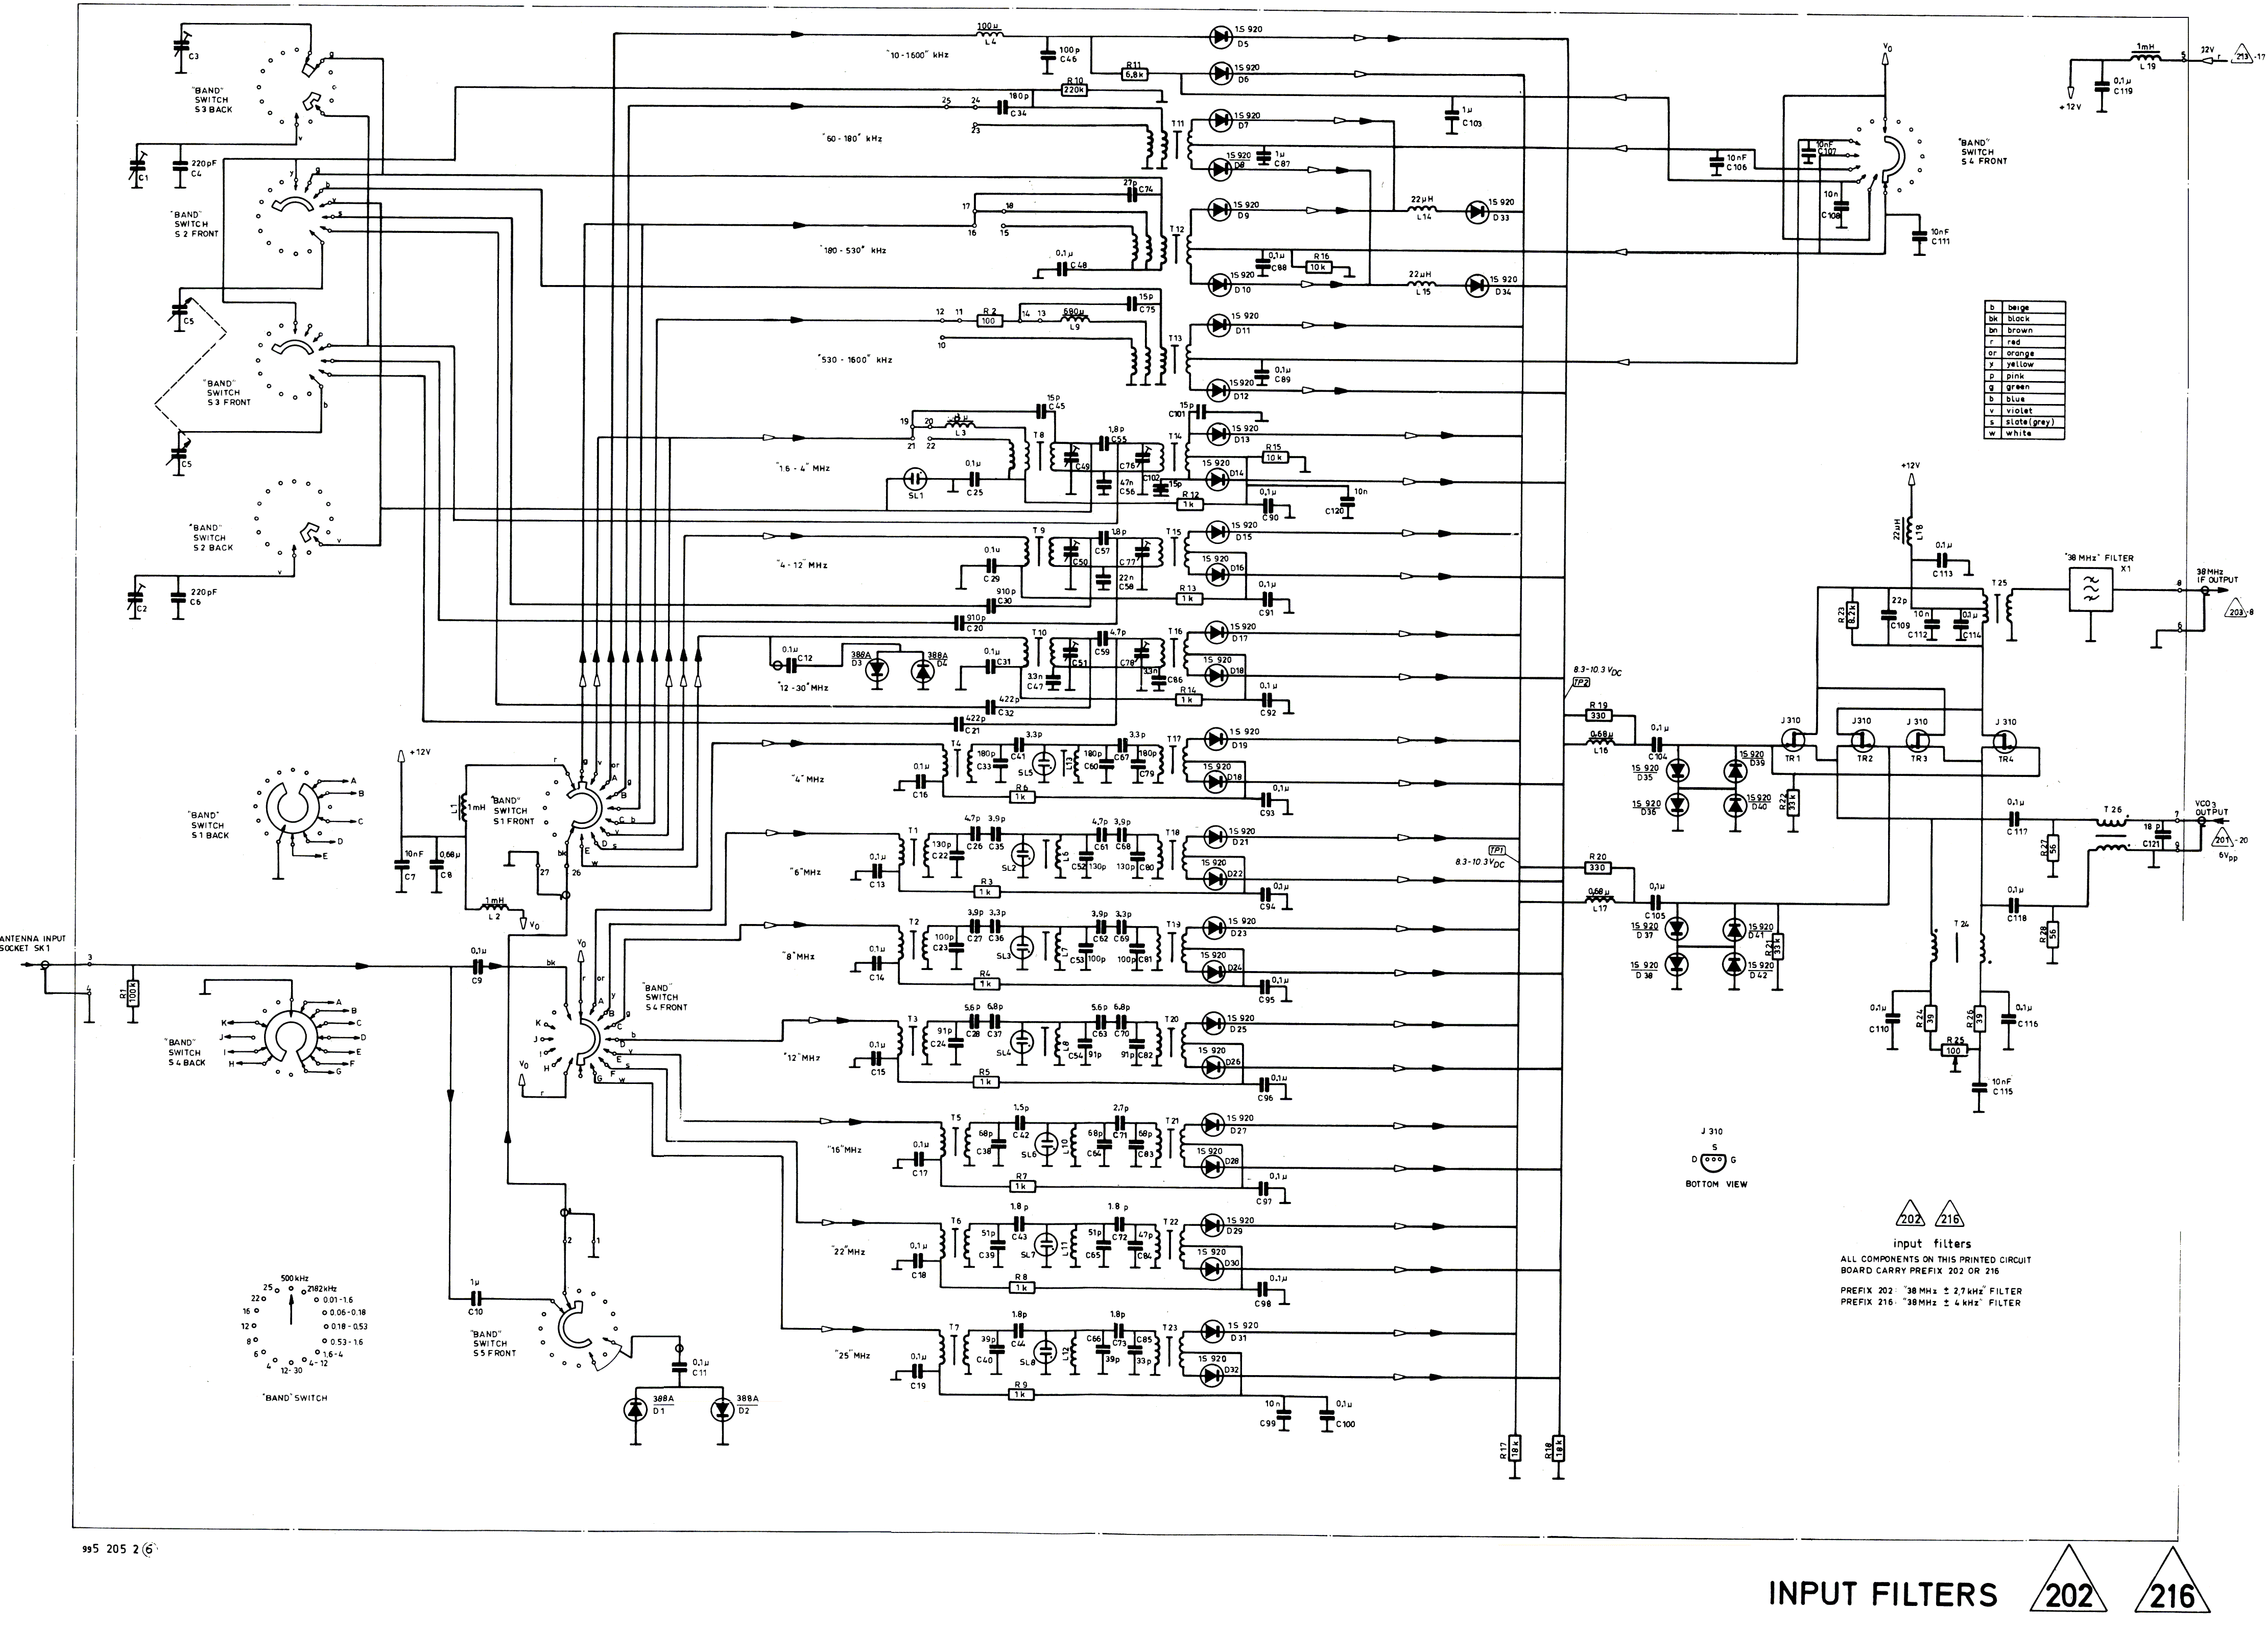 Skanti HF Input Filters diagram 202